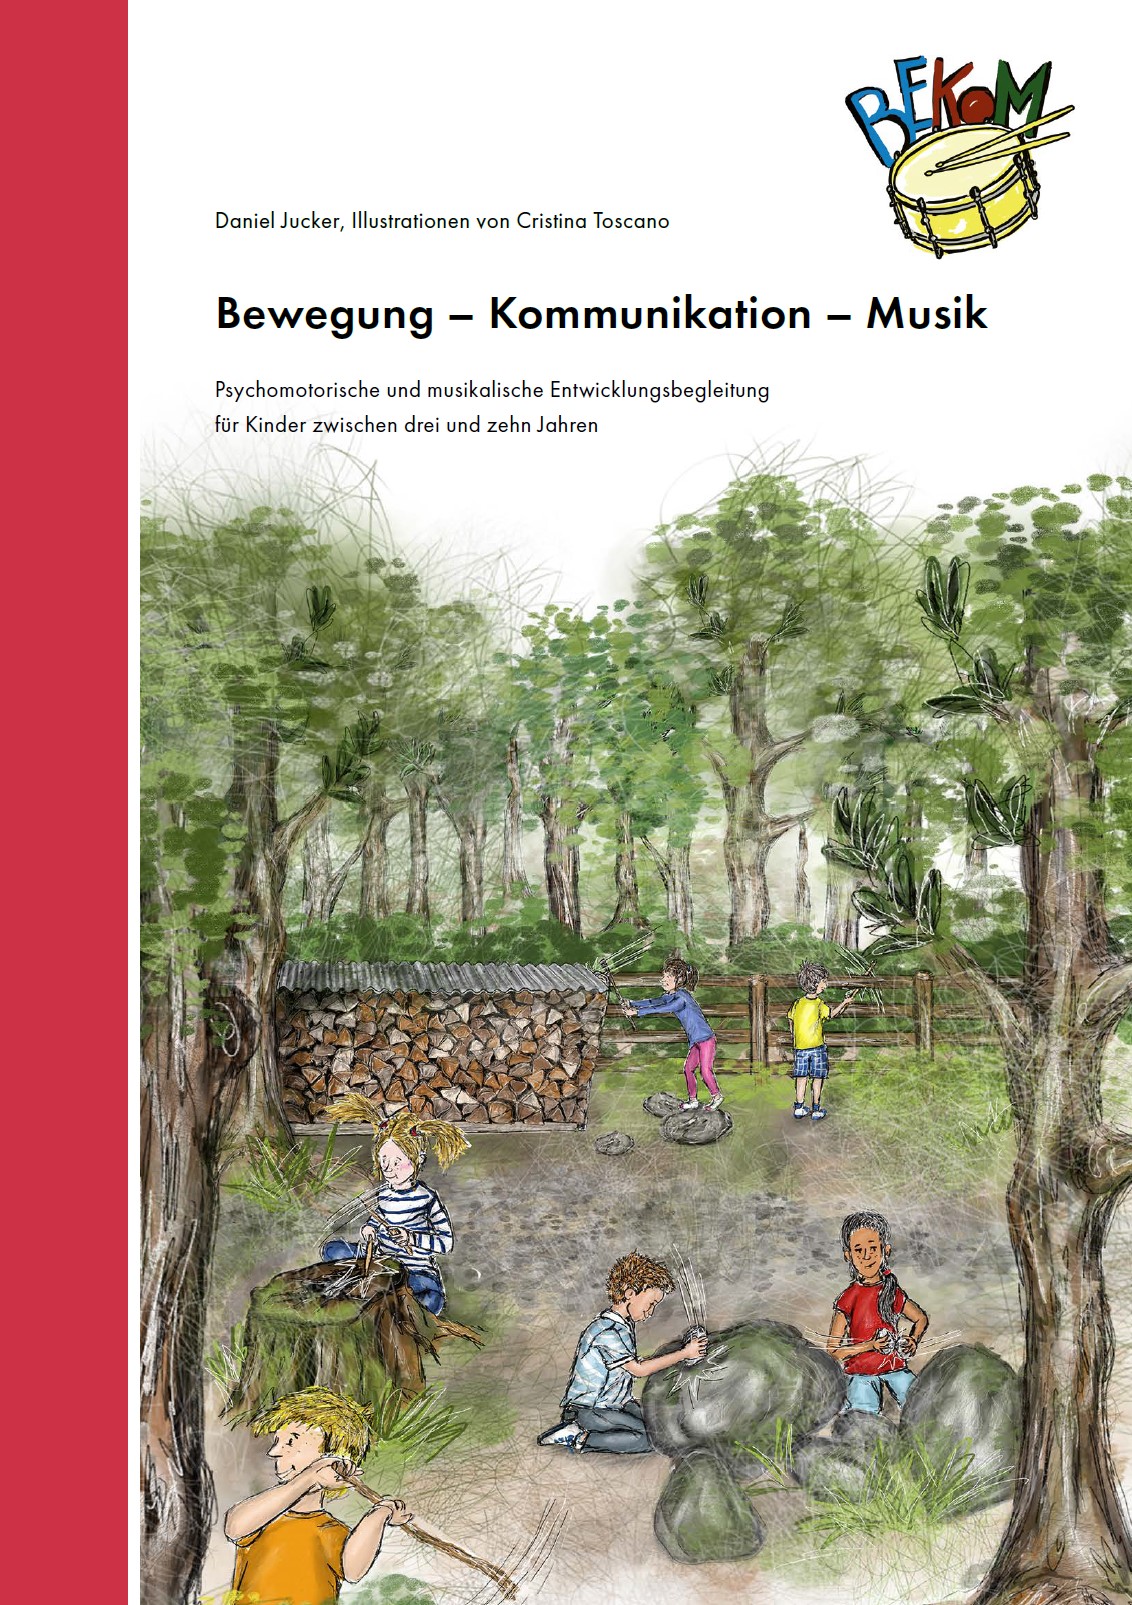  L'image montre la couverture du livre. On y voit des enfants qui jouent dans la forêt. 